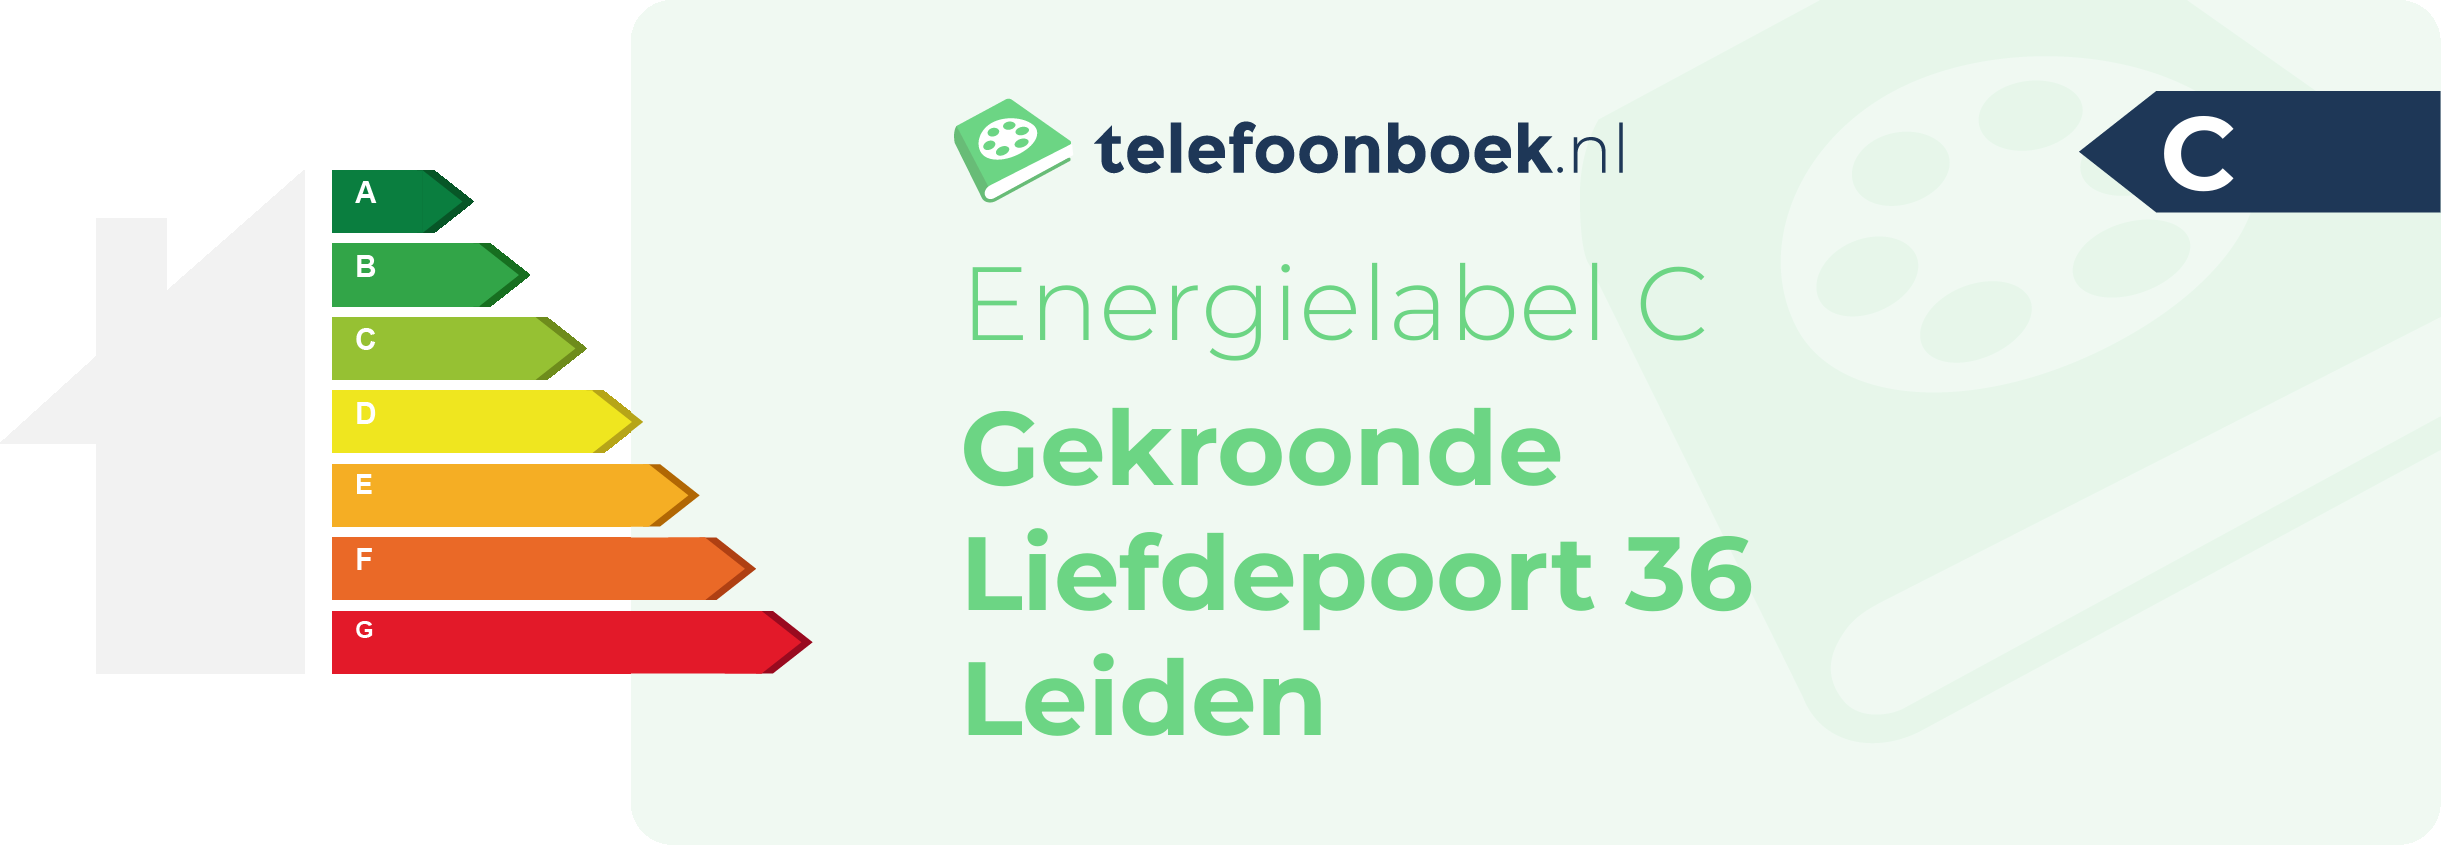 Energielabel Gekroonde Liefdepoort 36 Leiden